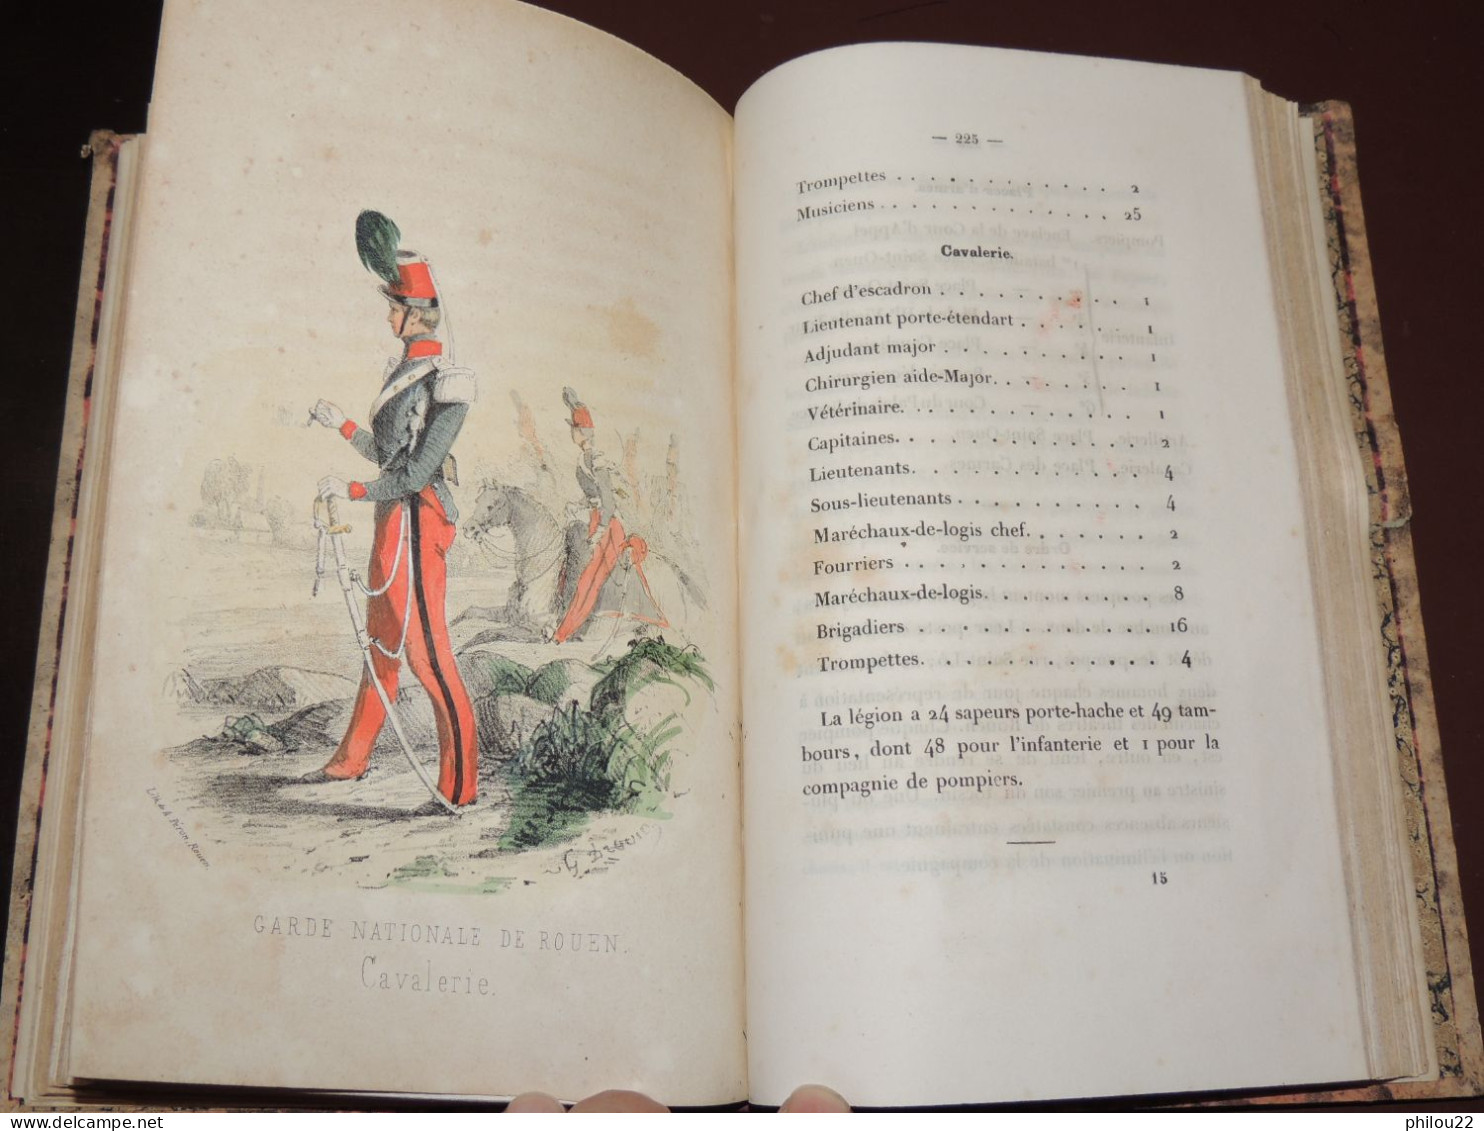 BOUTEILLER  Histoire de Rouen, des milices et gardes... Planches coloriées  1857